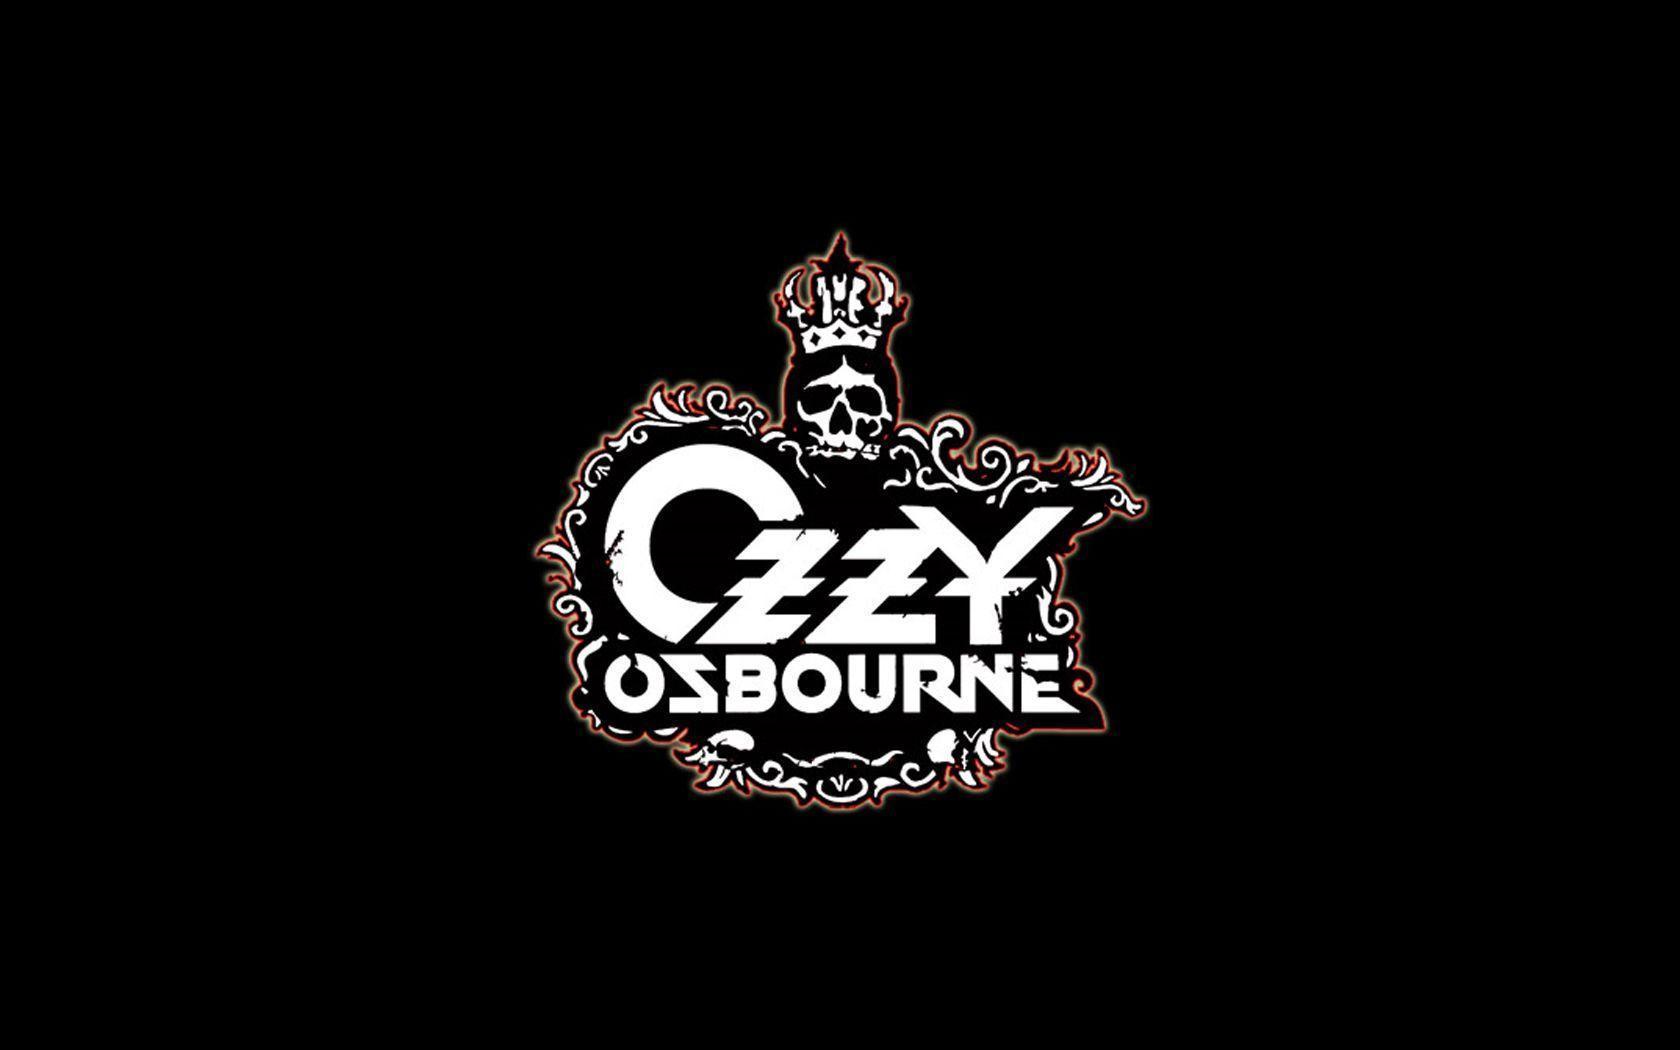 Ozzy Osbourne Wallpaper. Ozzy Osbourne Background